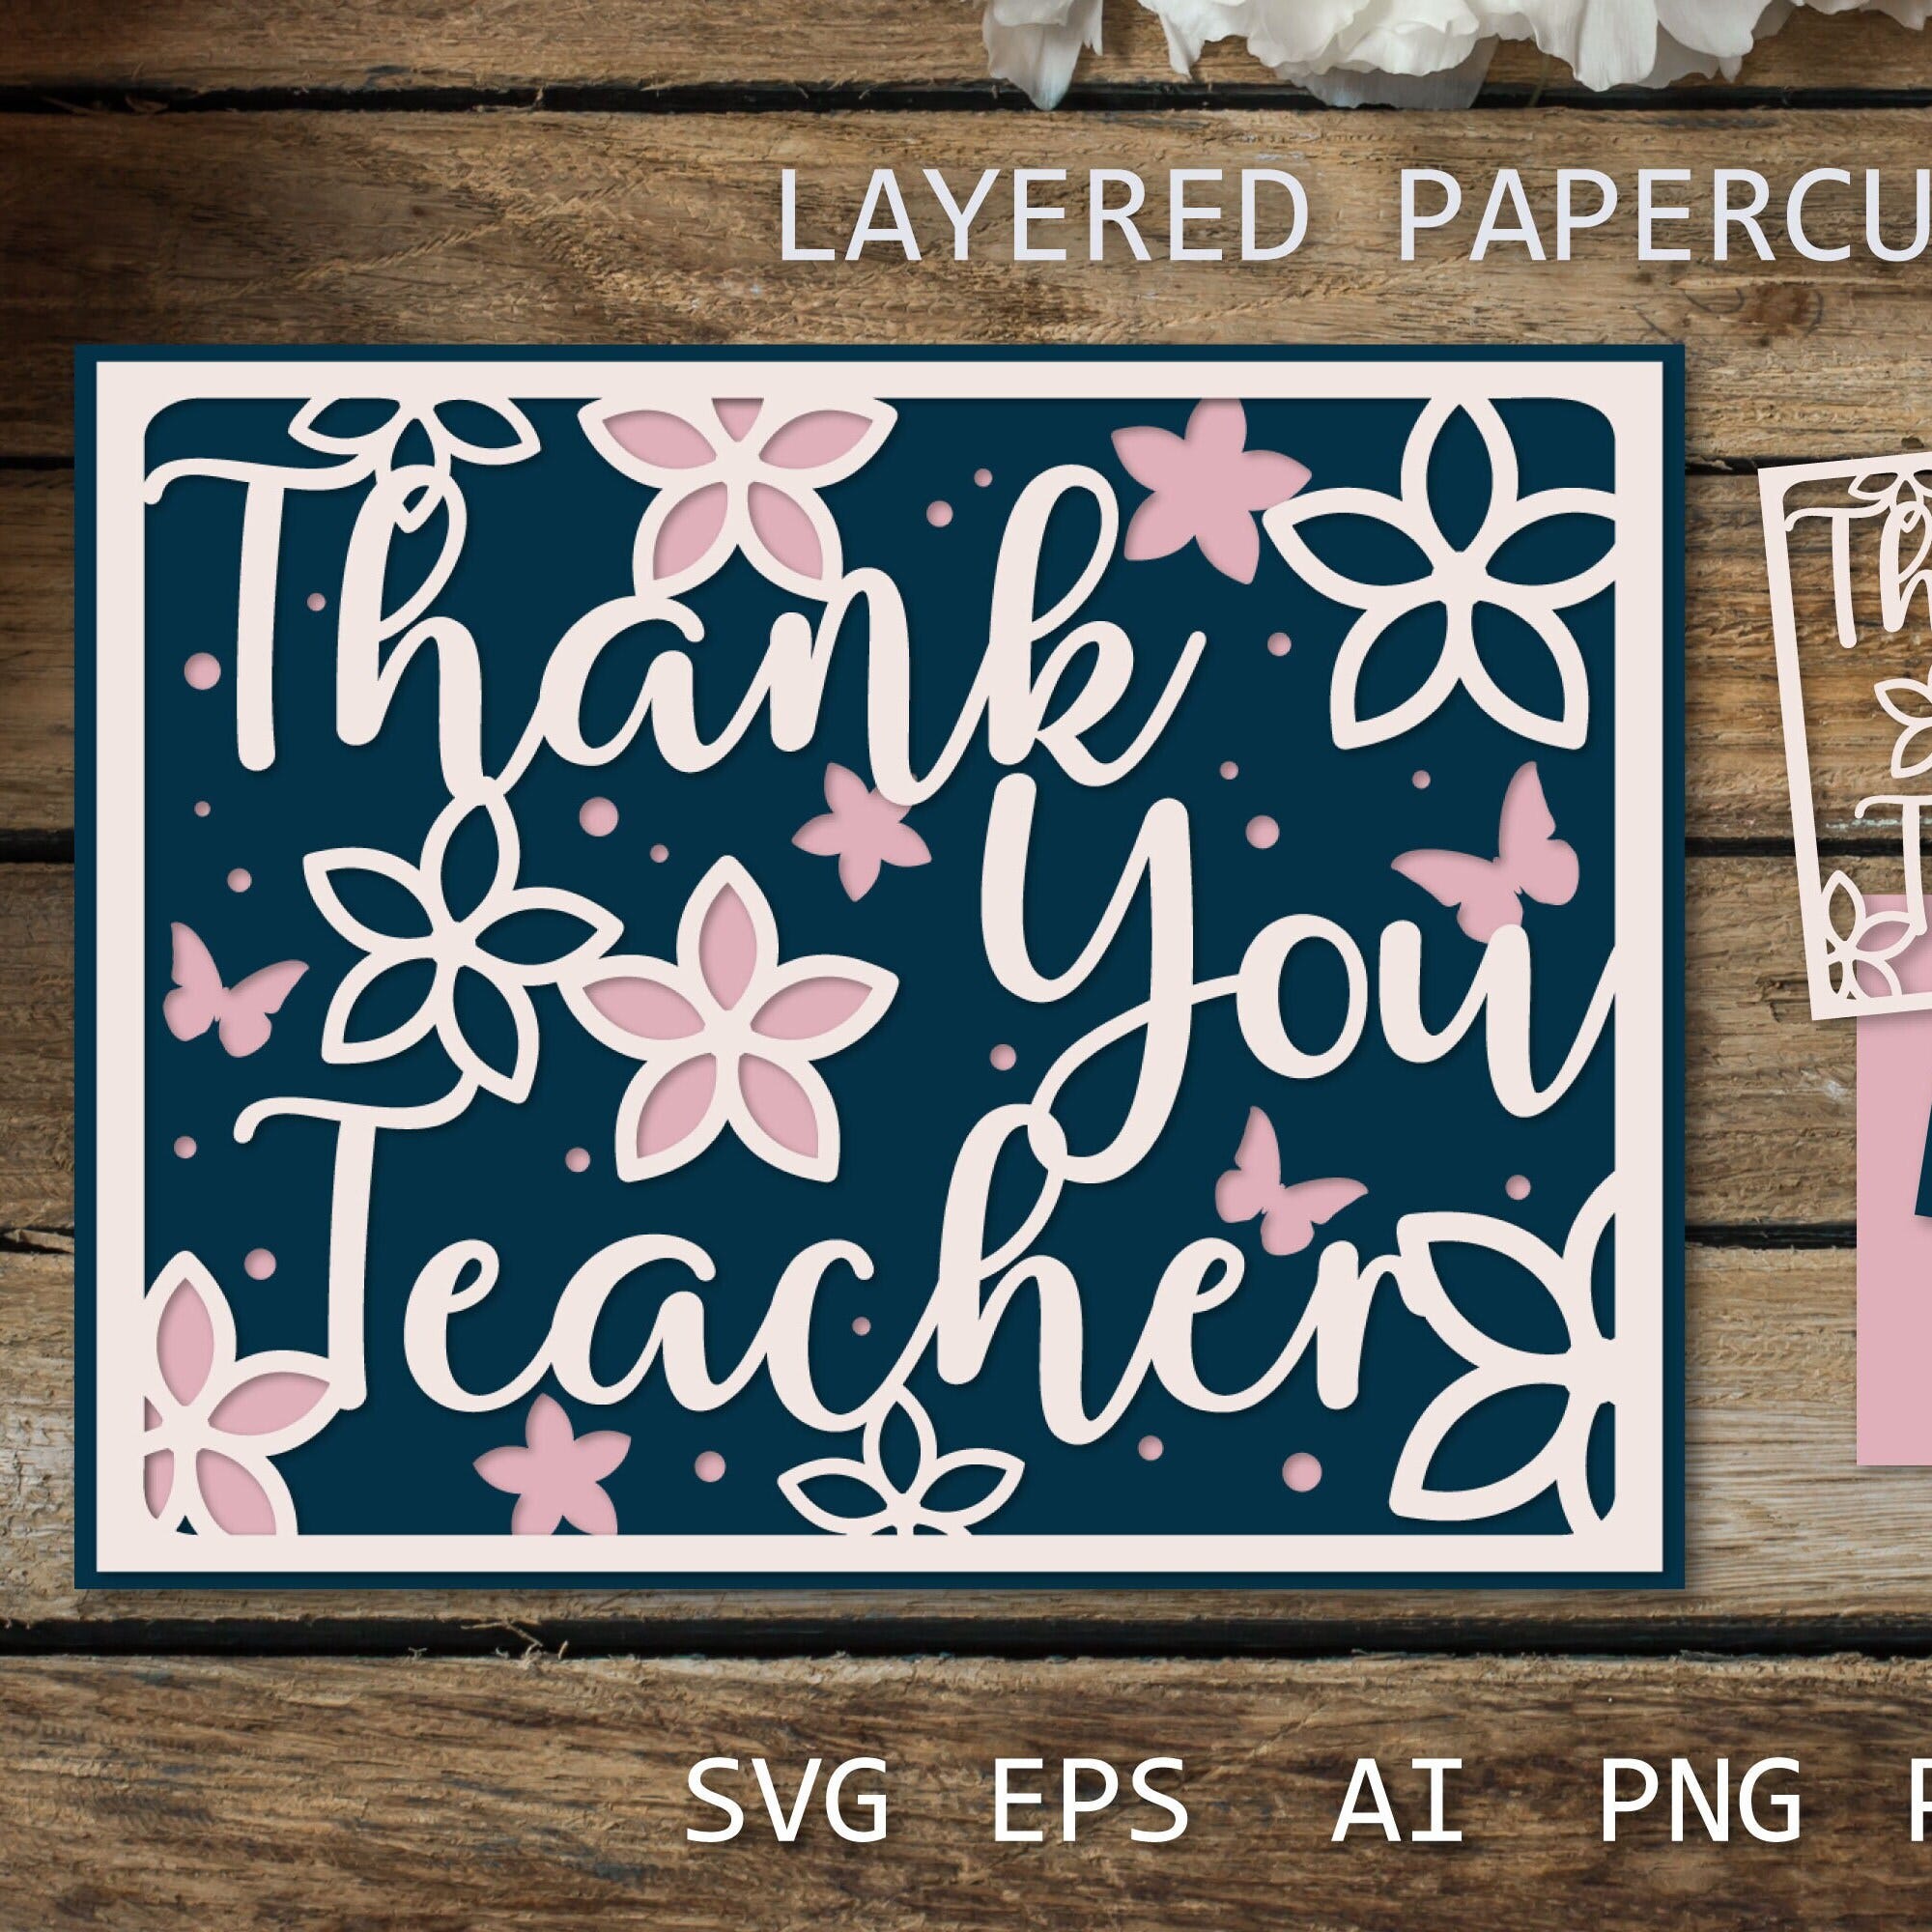 Thank you Teacher card SVG | Layered paper cut card, Thank you card ideas, 3d papercut for cricut